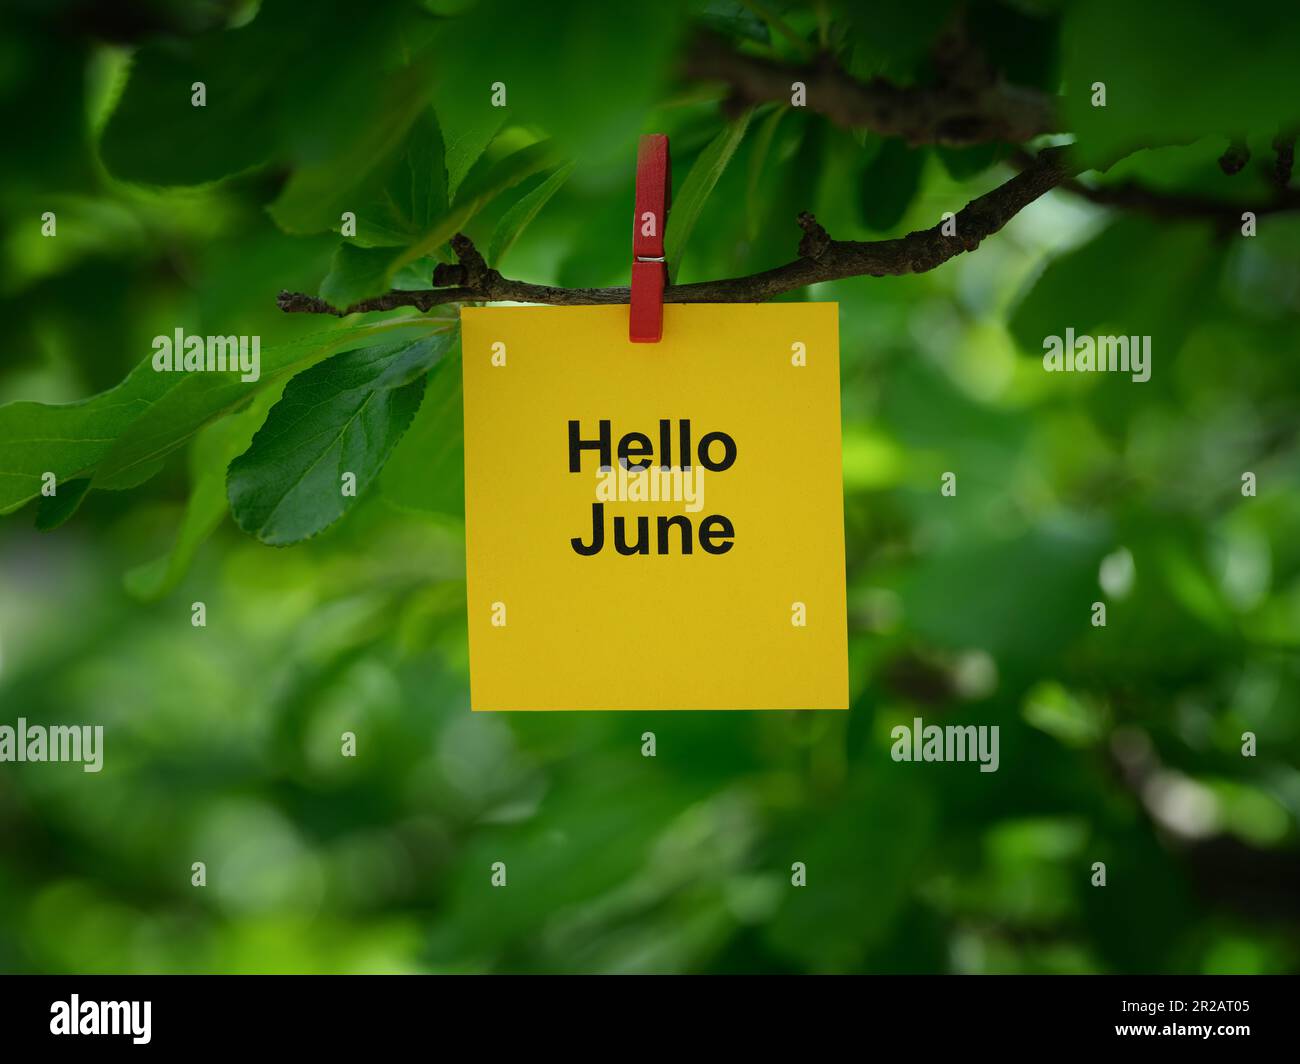 Una nota di carta gialla con le parole Hello June su di essa allegata ad un ramo d'albero con un spilla vestiti. Primo piano. Foto Stock